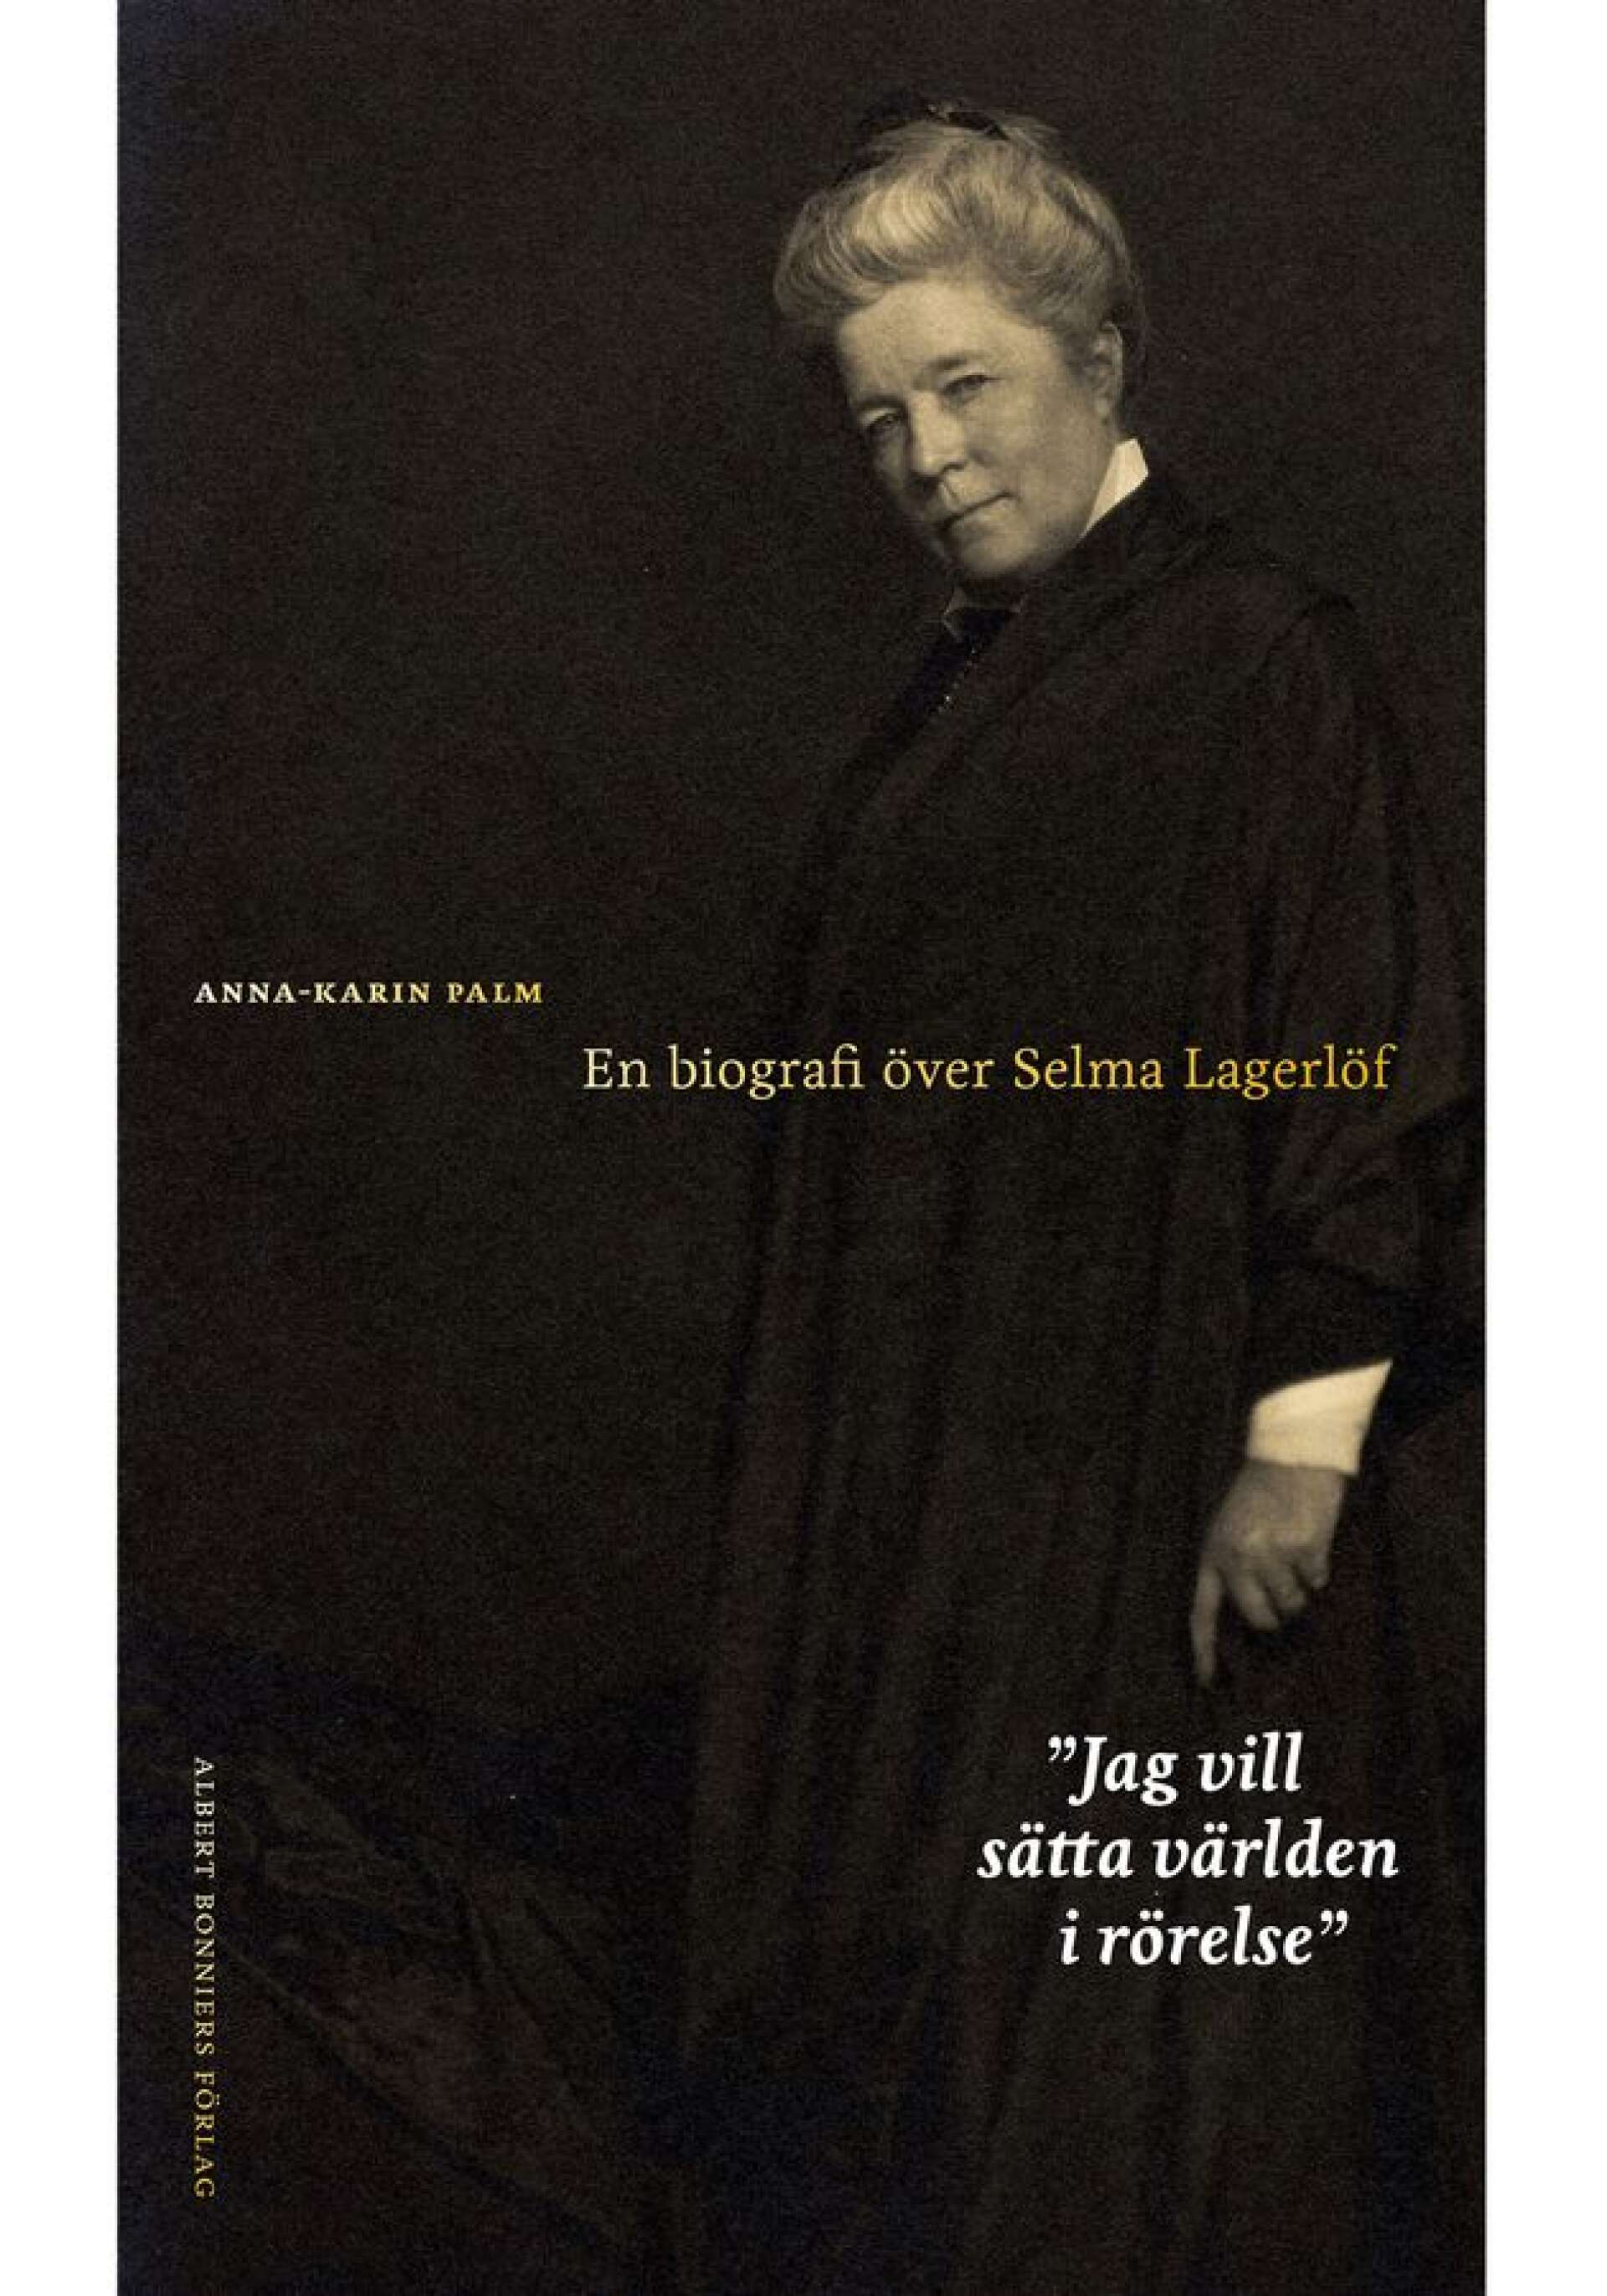 Jag vill sätta världen i rörelse (en biografi över Selma Lagerlöf) – Anna-Karin Palm